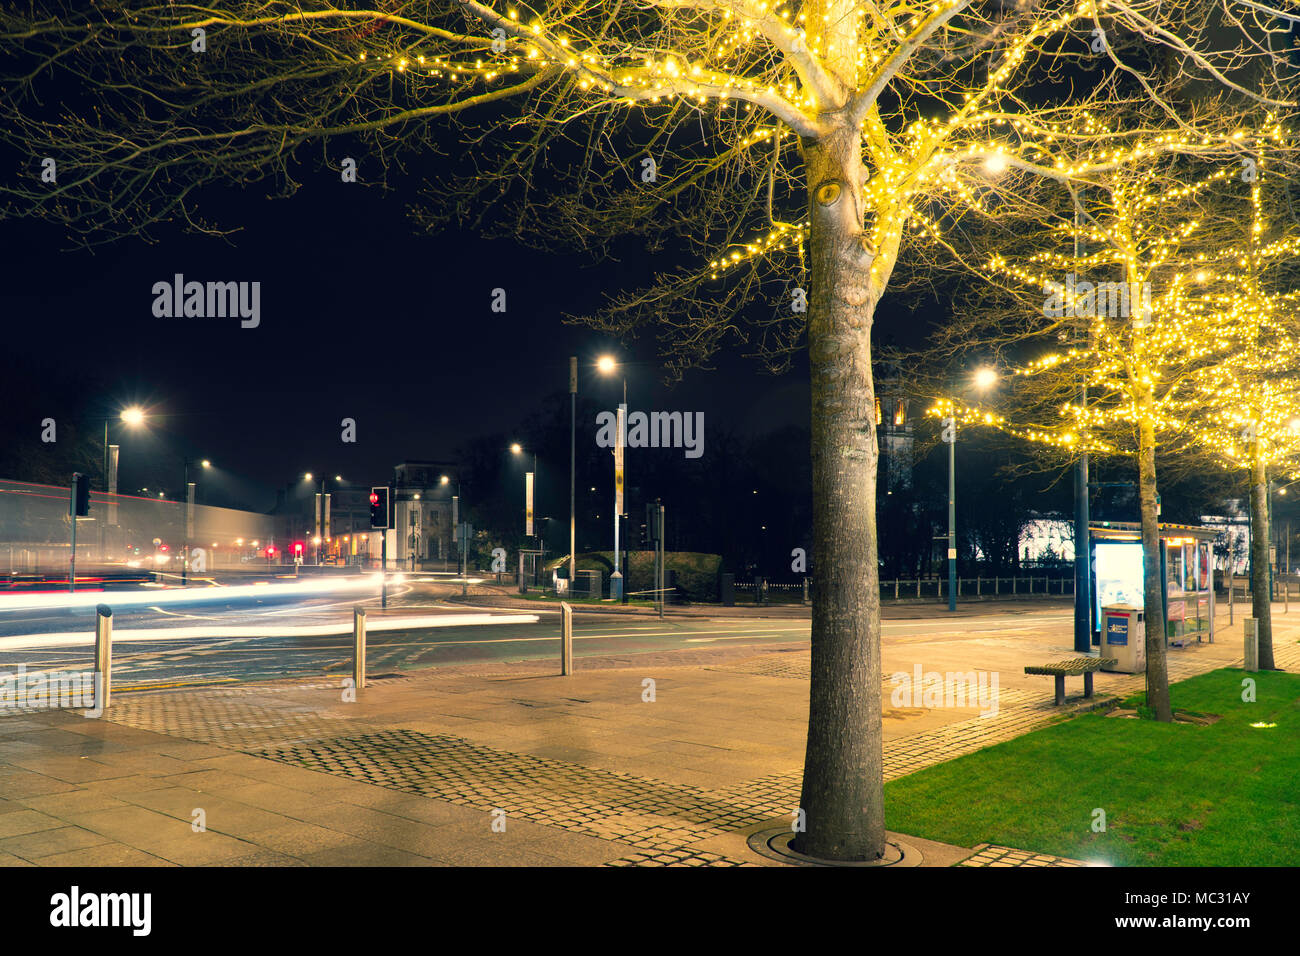 Immagine di un albero in una strada con luci tettuccio sull'albero, nota anche la pittura di luce dalle vetture di passaggio. visibile semaforo. Foto Stock